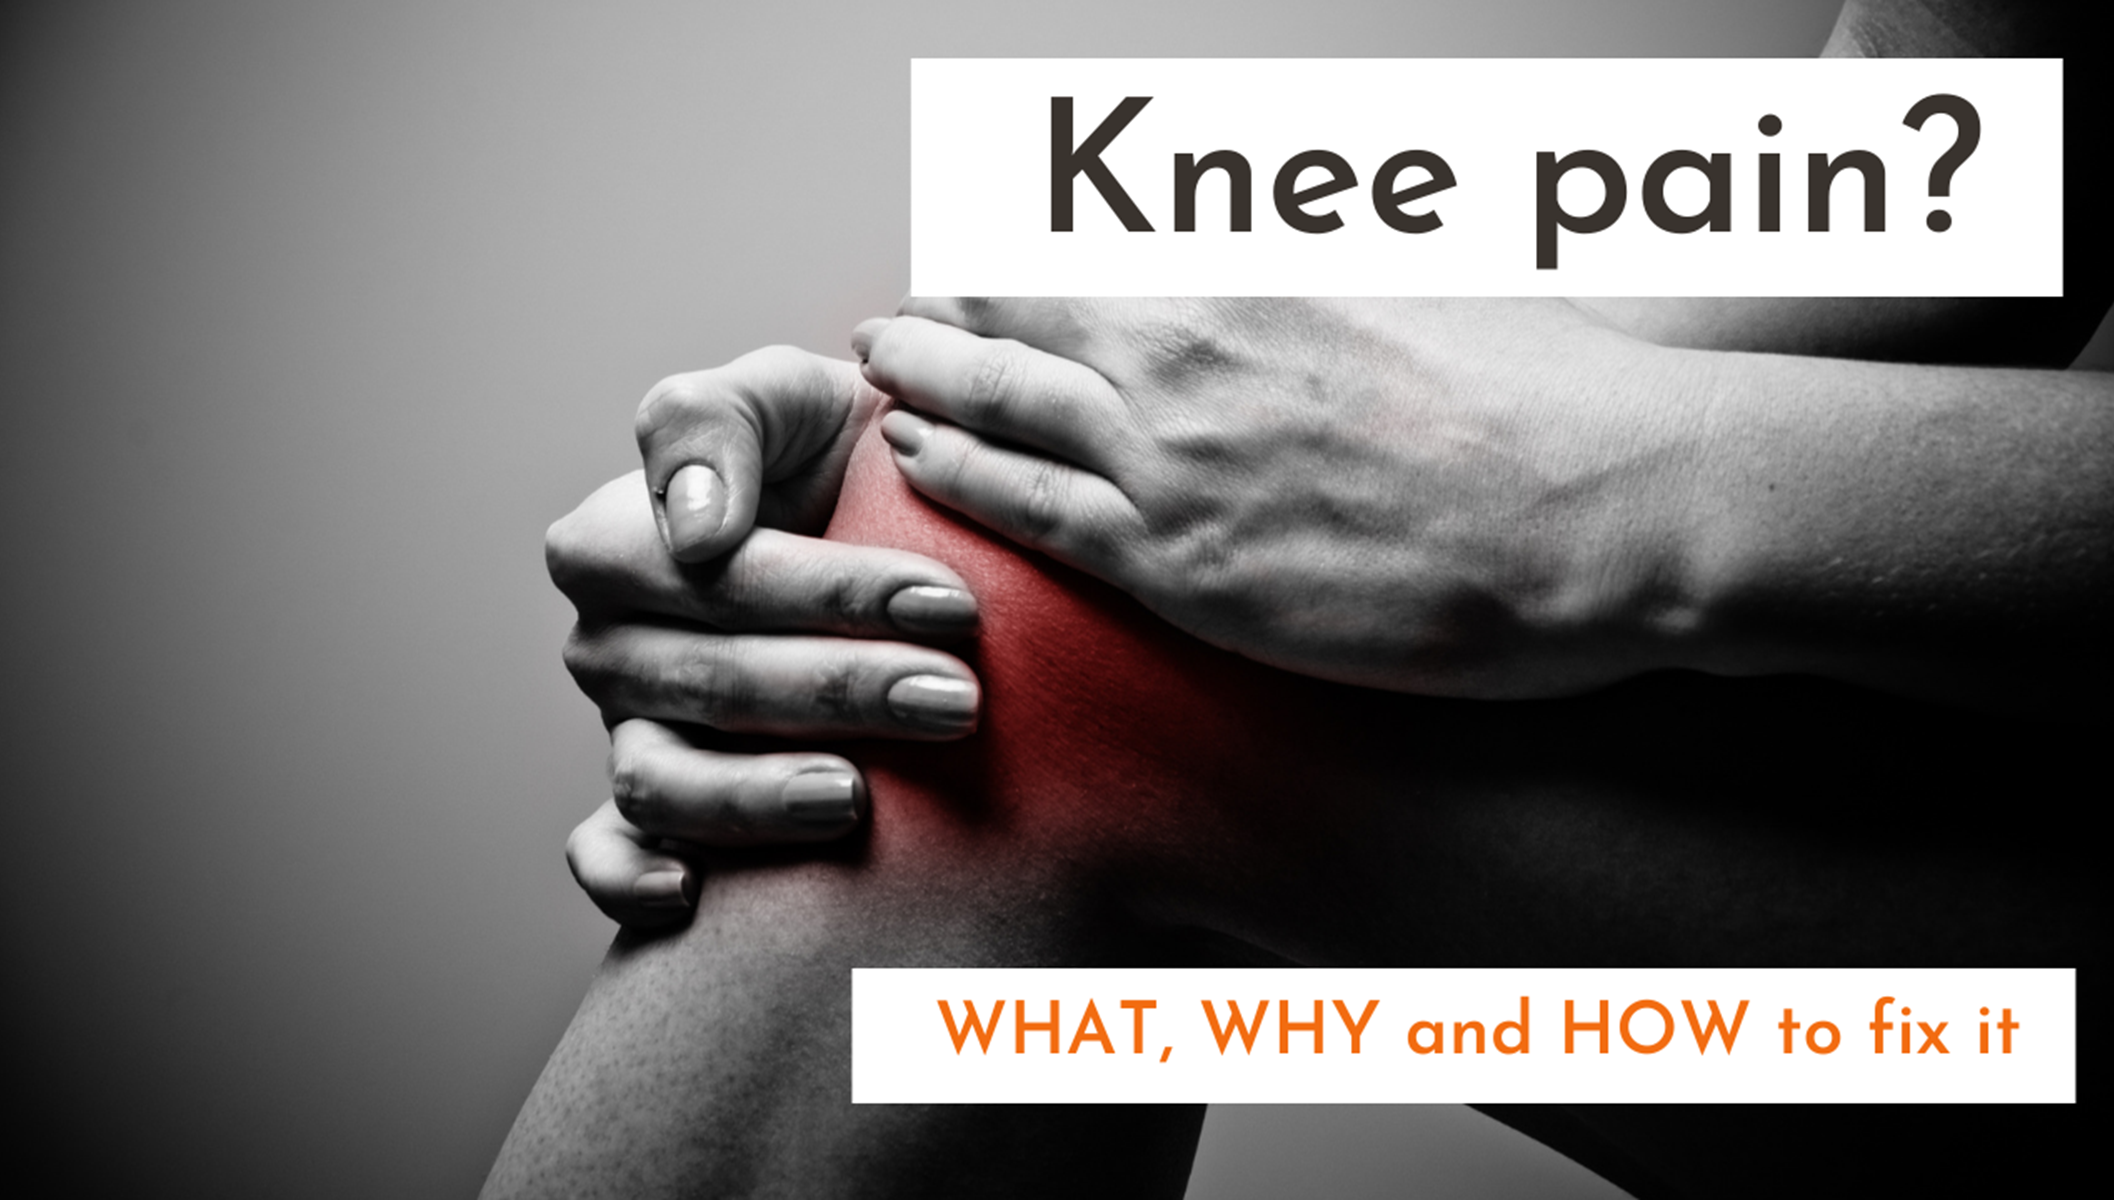 Knee pains?